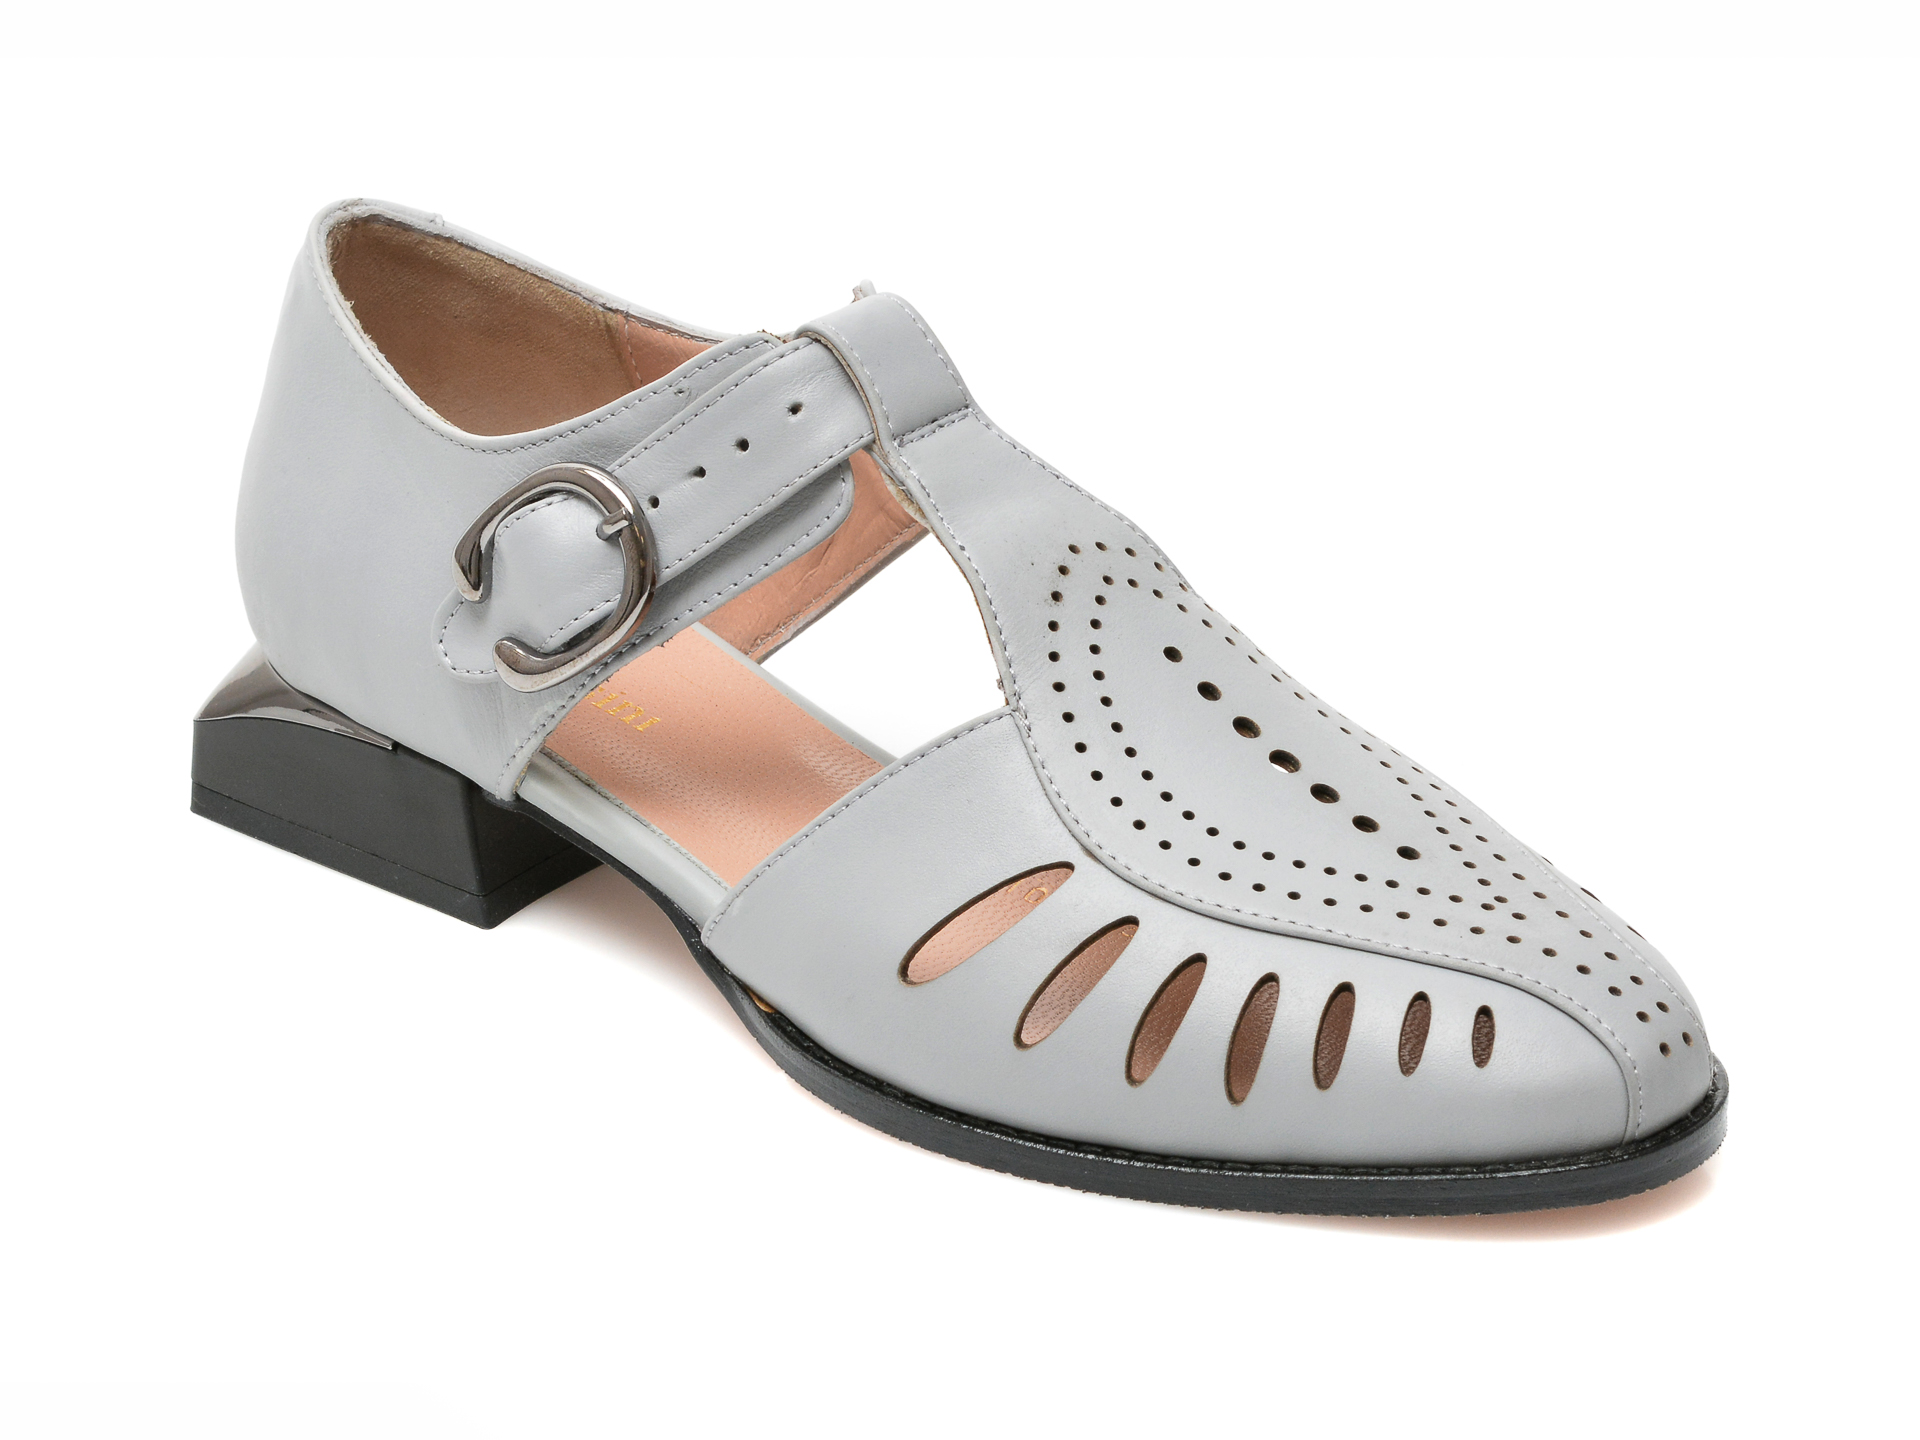 Pantofi FLAVIA PASSINI gri, 1091, din piele naturala Flavia Passini